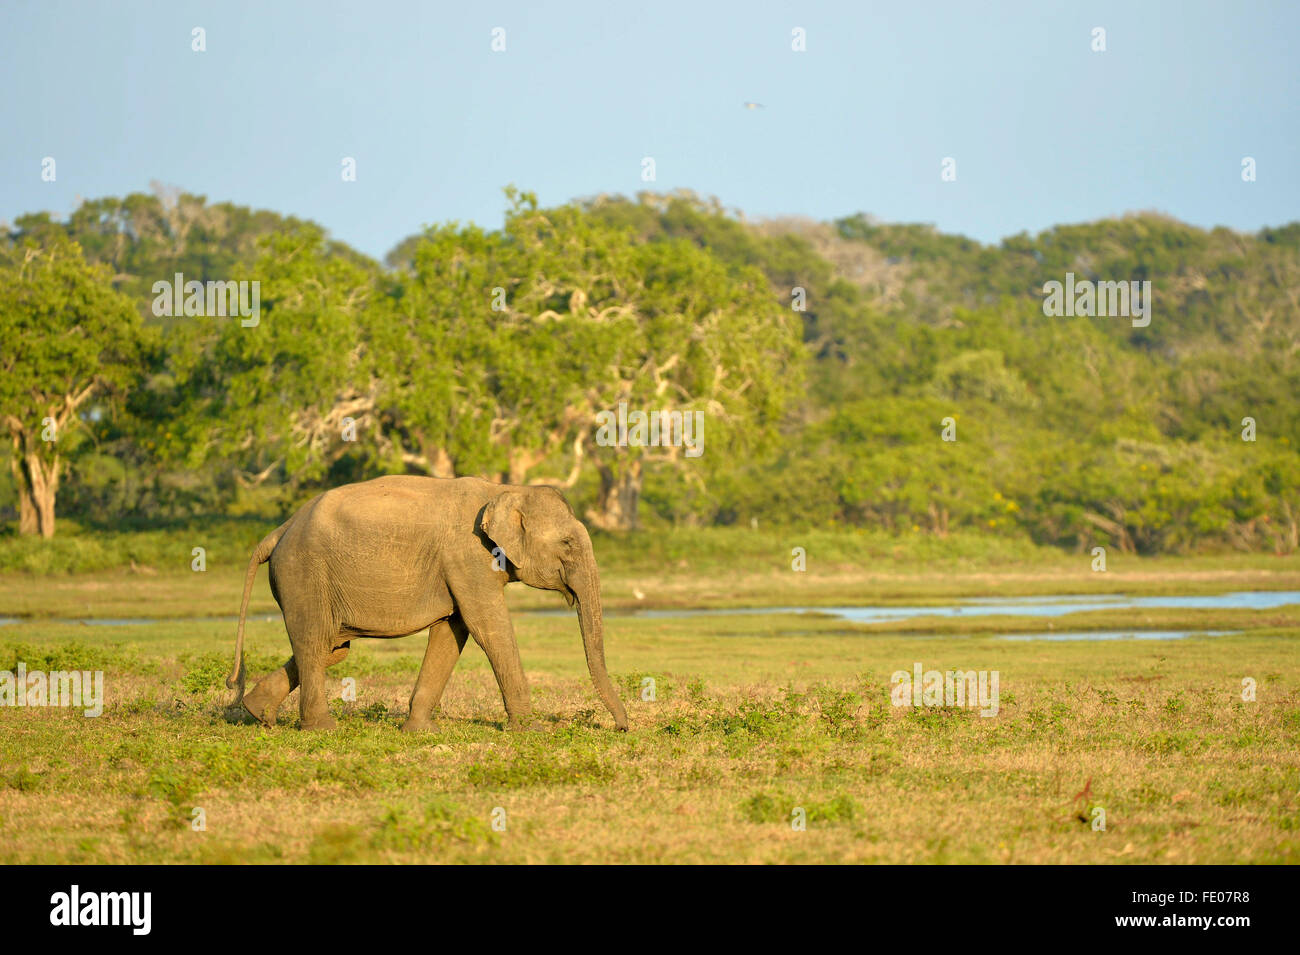 Elefante de Sri Lanka (Elephas maximus maximus) caminando por el Parque Nacional, el Parque Nacional de Yala, Sri Lanka, marzo Foto de stock